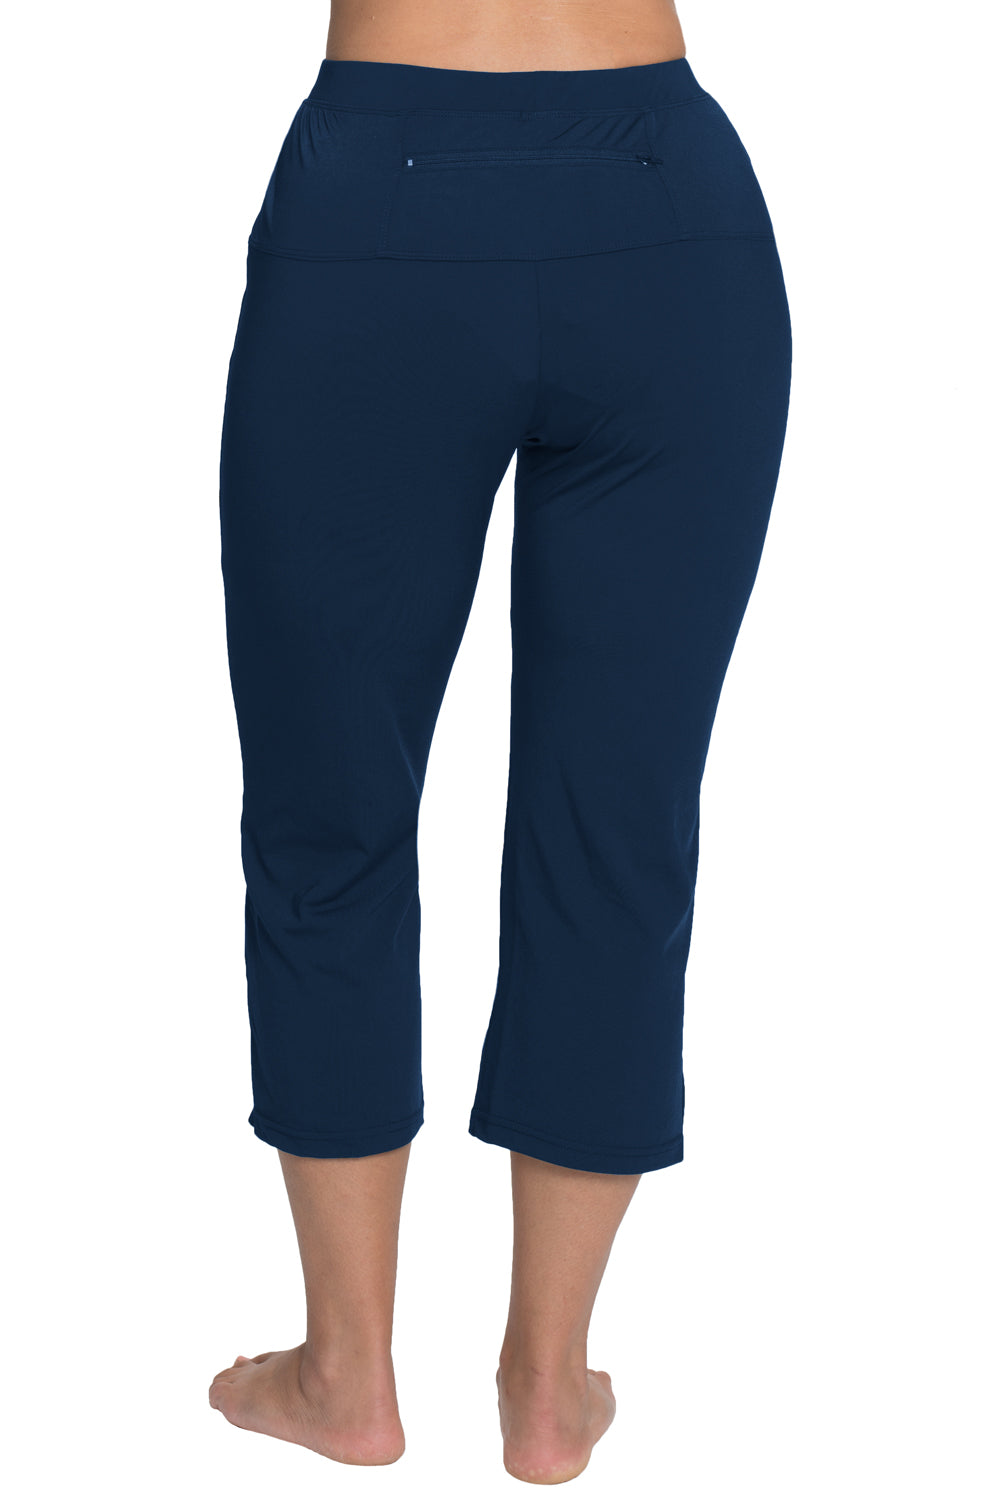 Eazy Women's Printed Capri Pants- Pack of 2- Navy Blue & Steel Blue